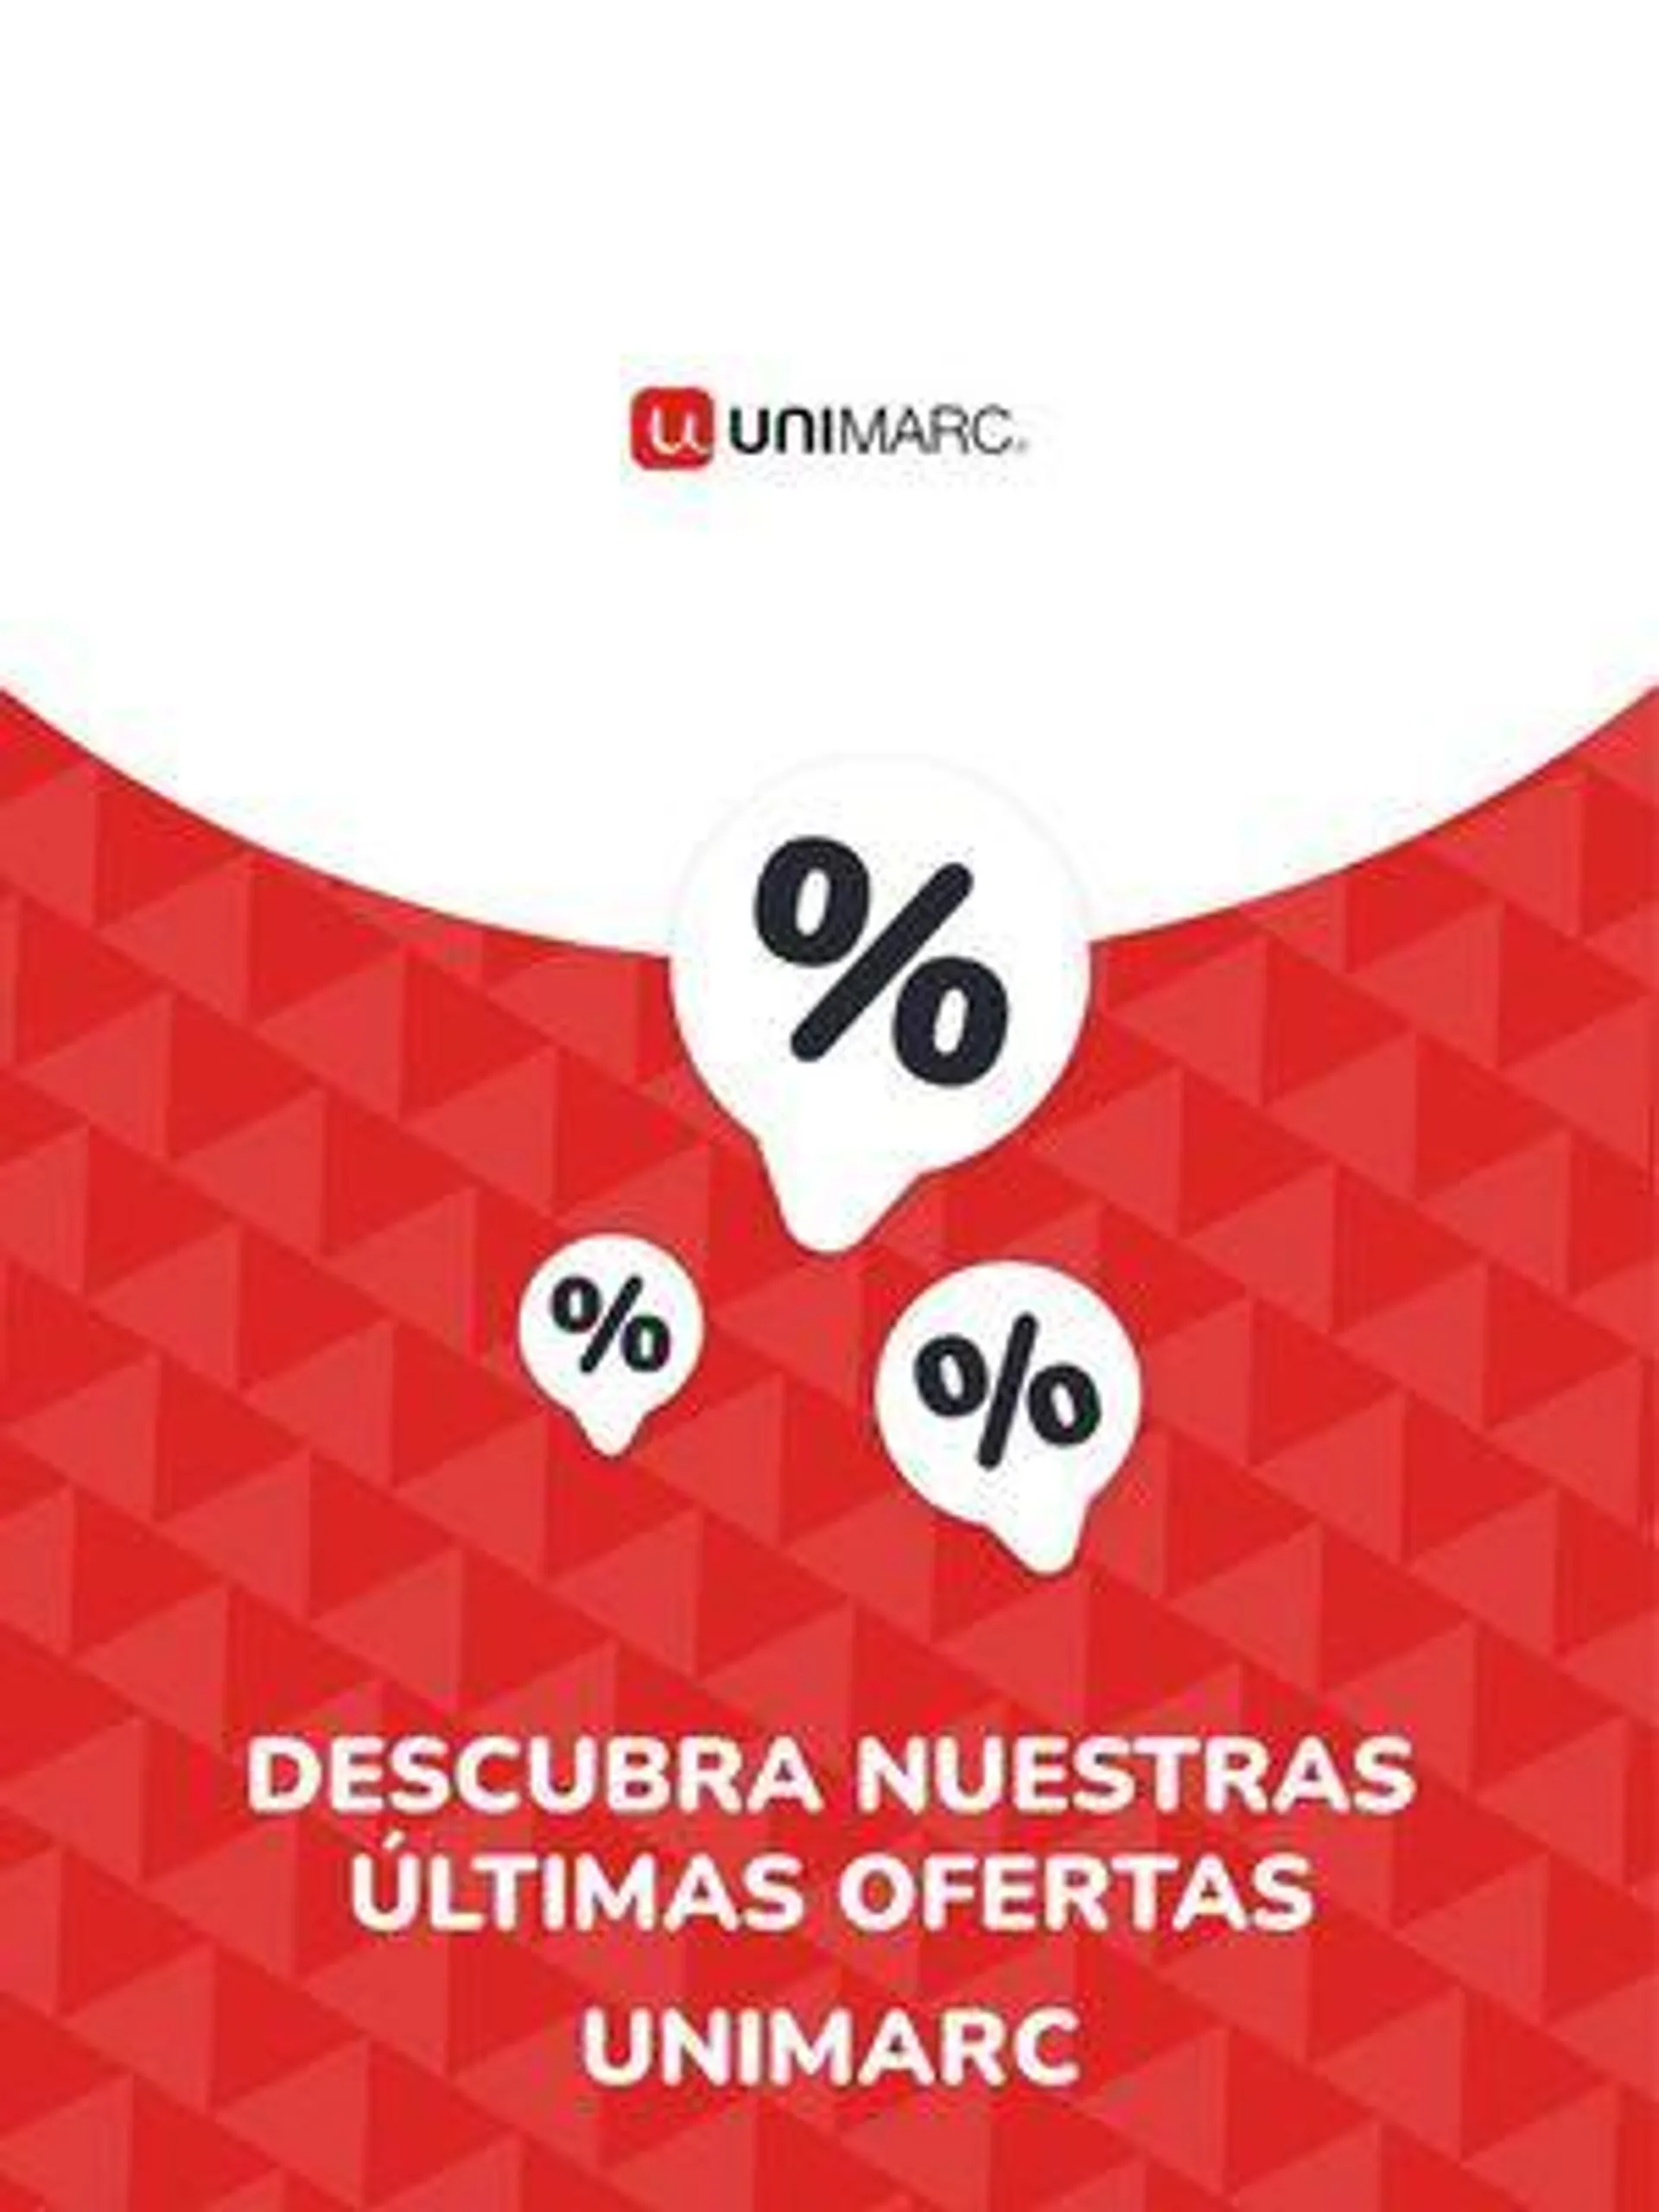 Ofertas Unimarc - 1